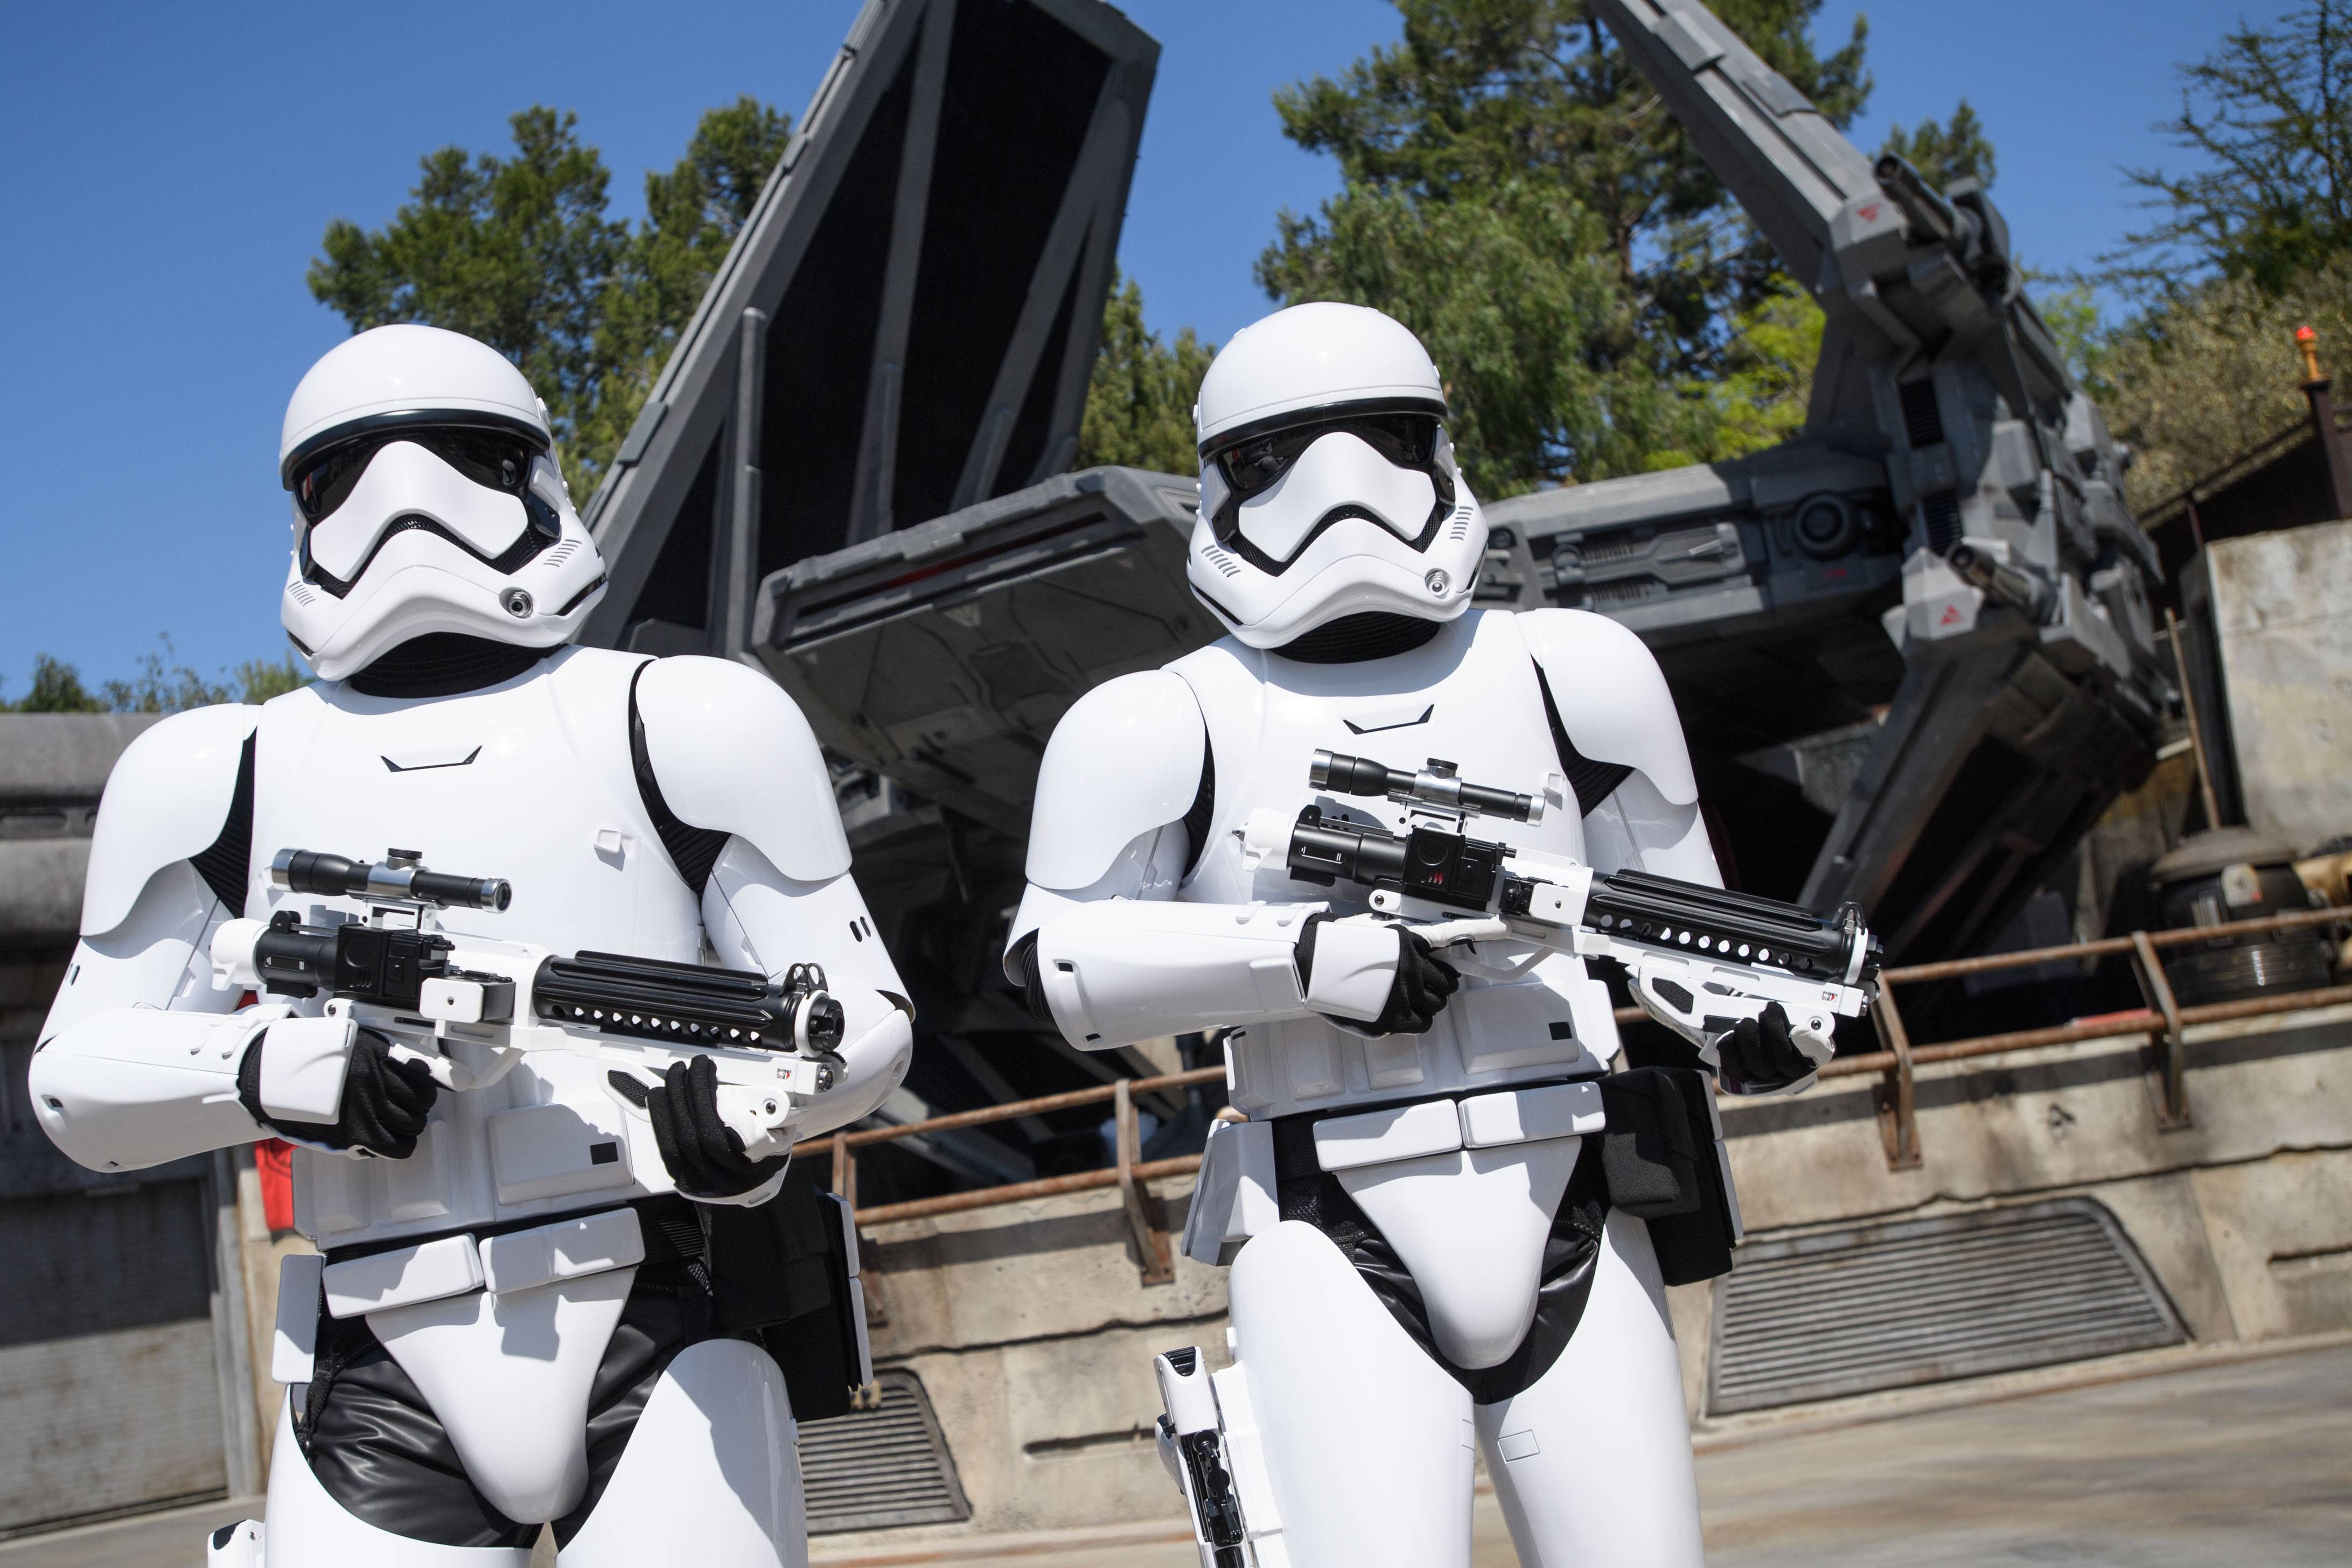 Milestone permits filed for Star Wars Galaxy's Edge ride